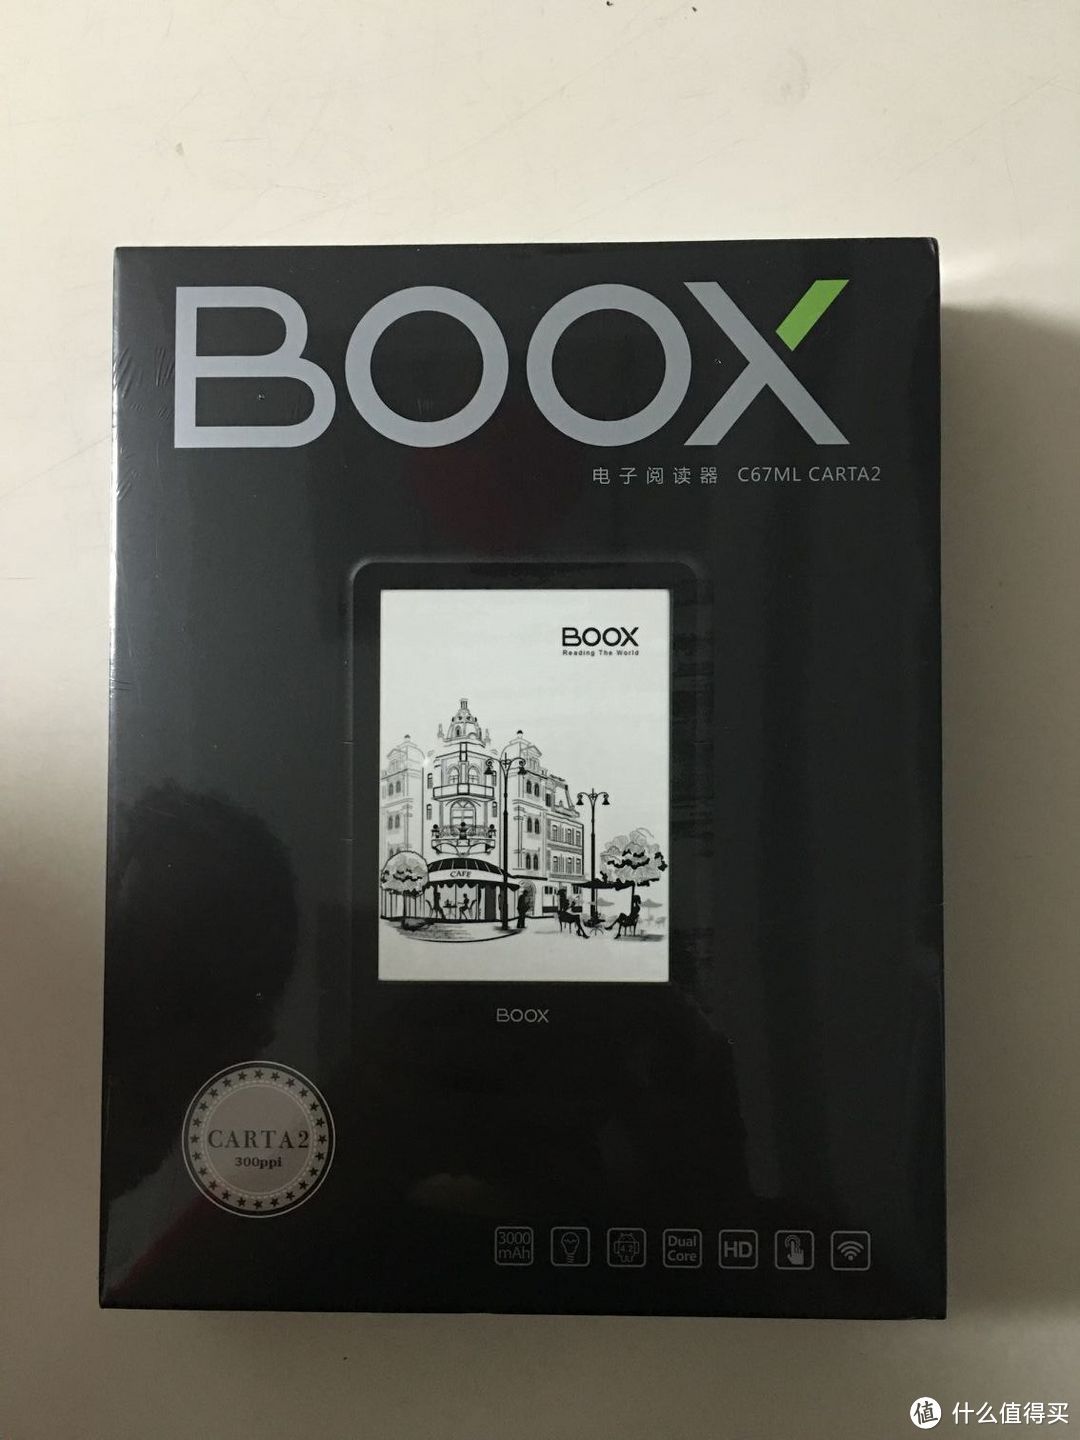 来自国产的努力-ONYX BOOX C67ml Carta2电纸书阅读器